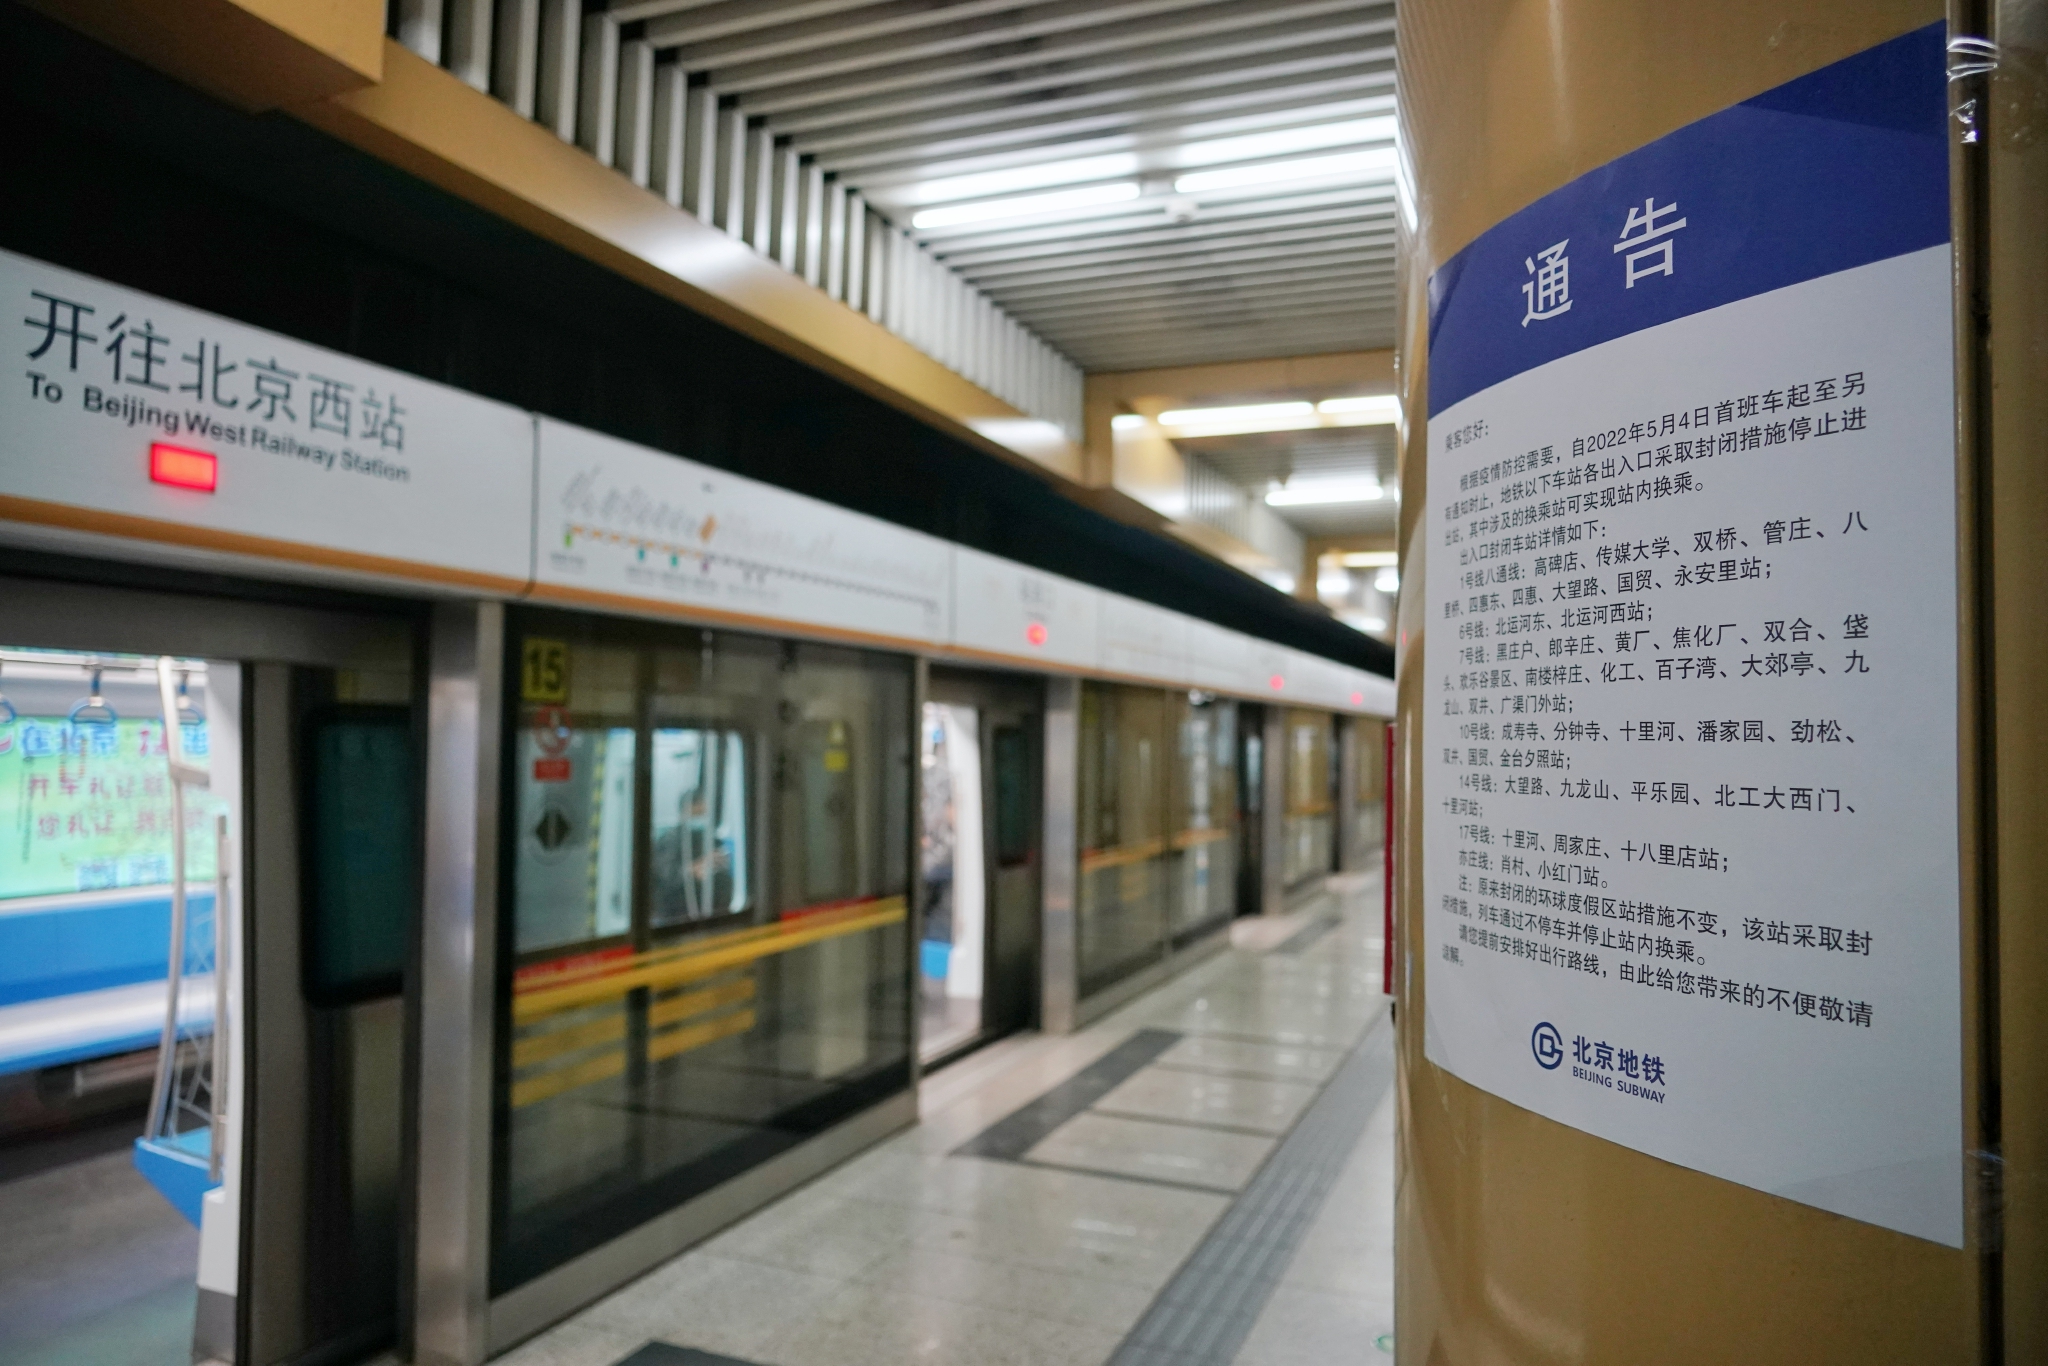 北京地铁7号线磁器口站,站台内张贴了运营调整信息